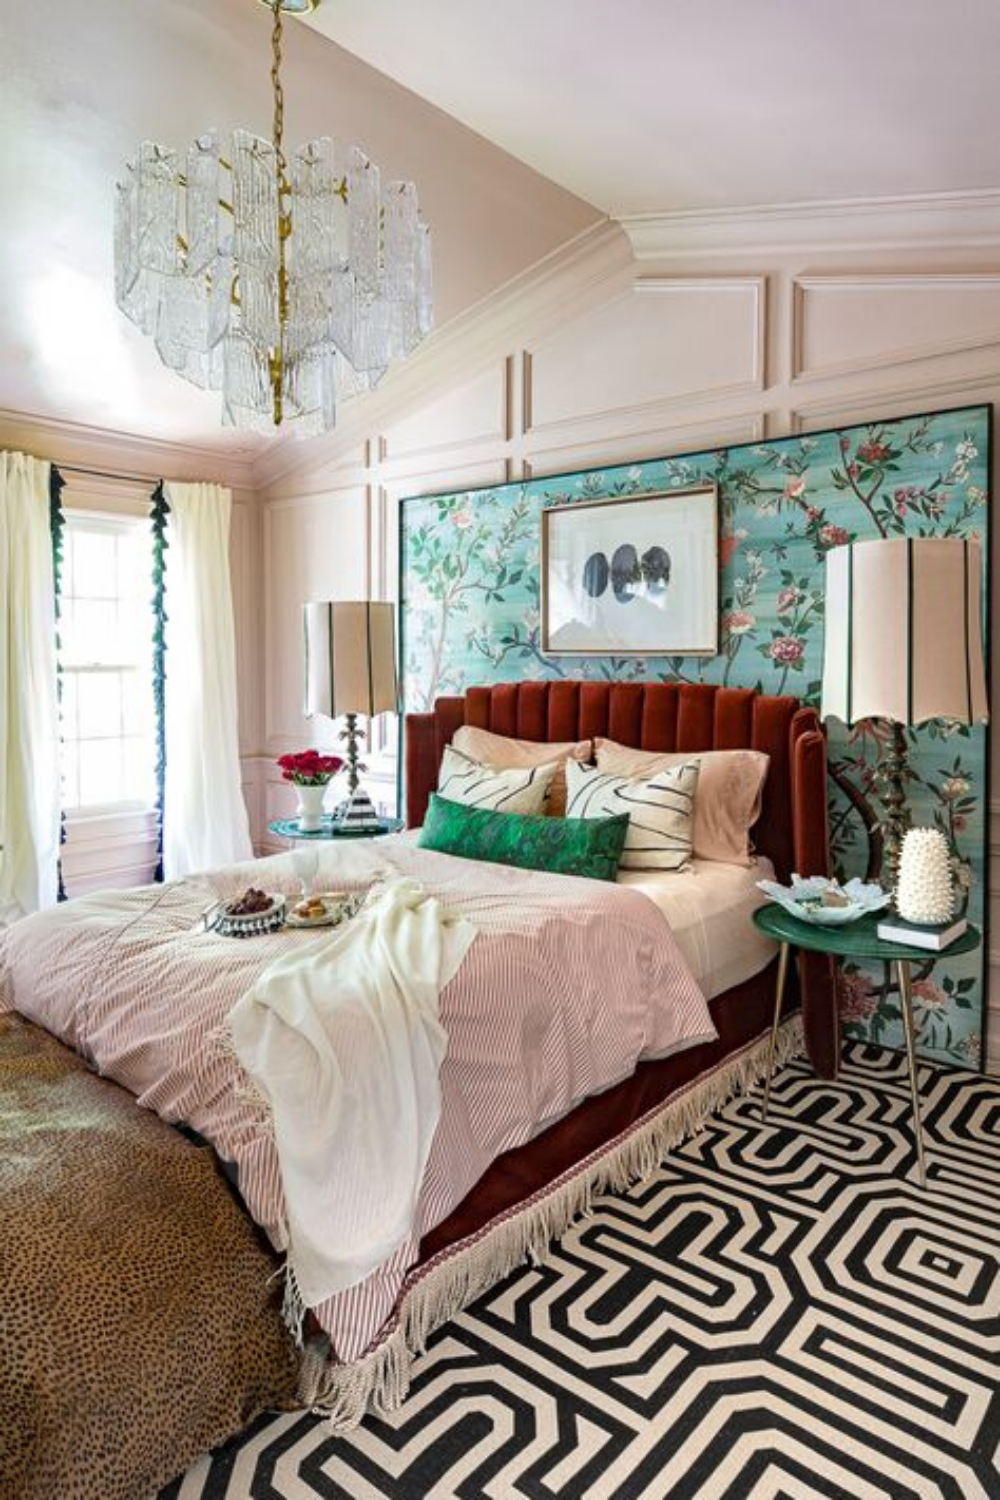 15 ý tưởng màu sắc phòng ngủ theo phong cách cổ điển ngọt ngào - Ảnh 4.